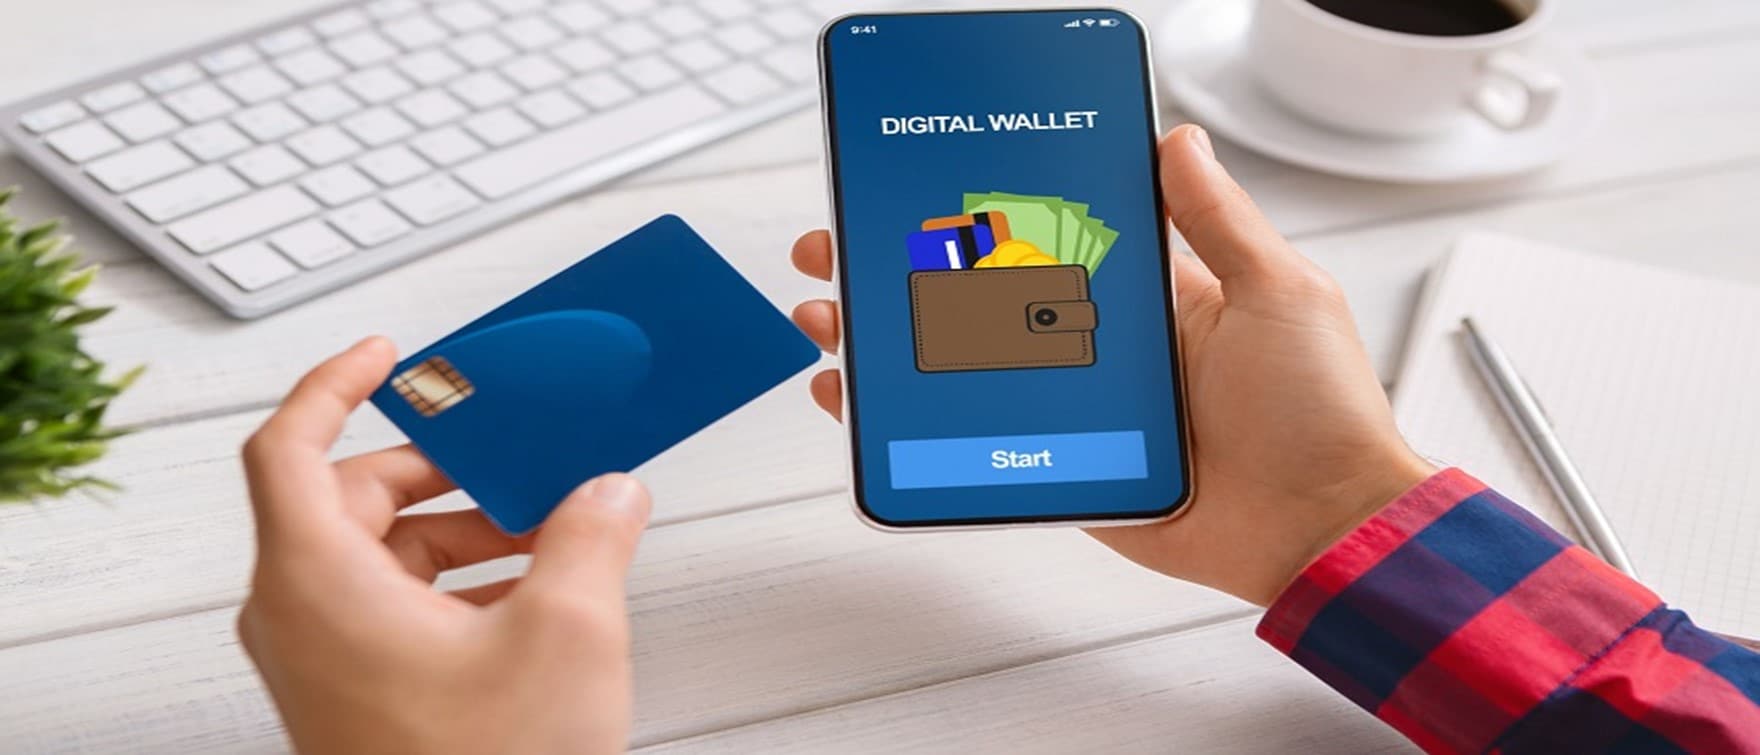 nft digital wallet